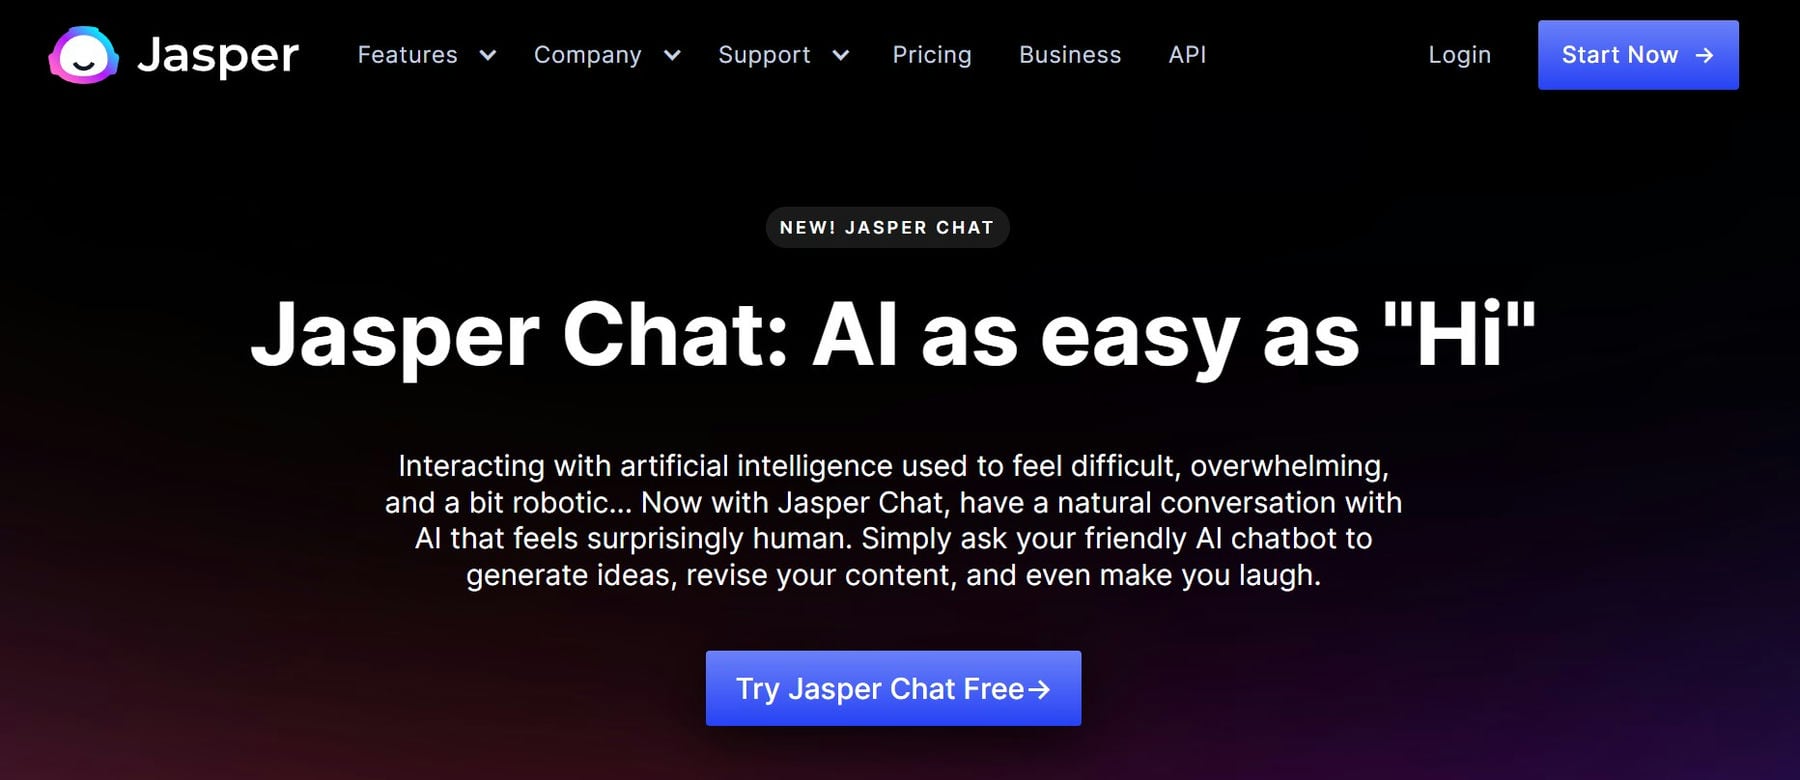 Jasper AI Chat Page April 2023